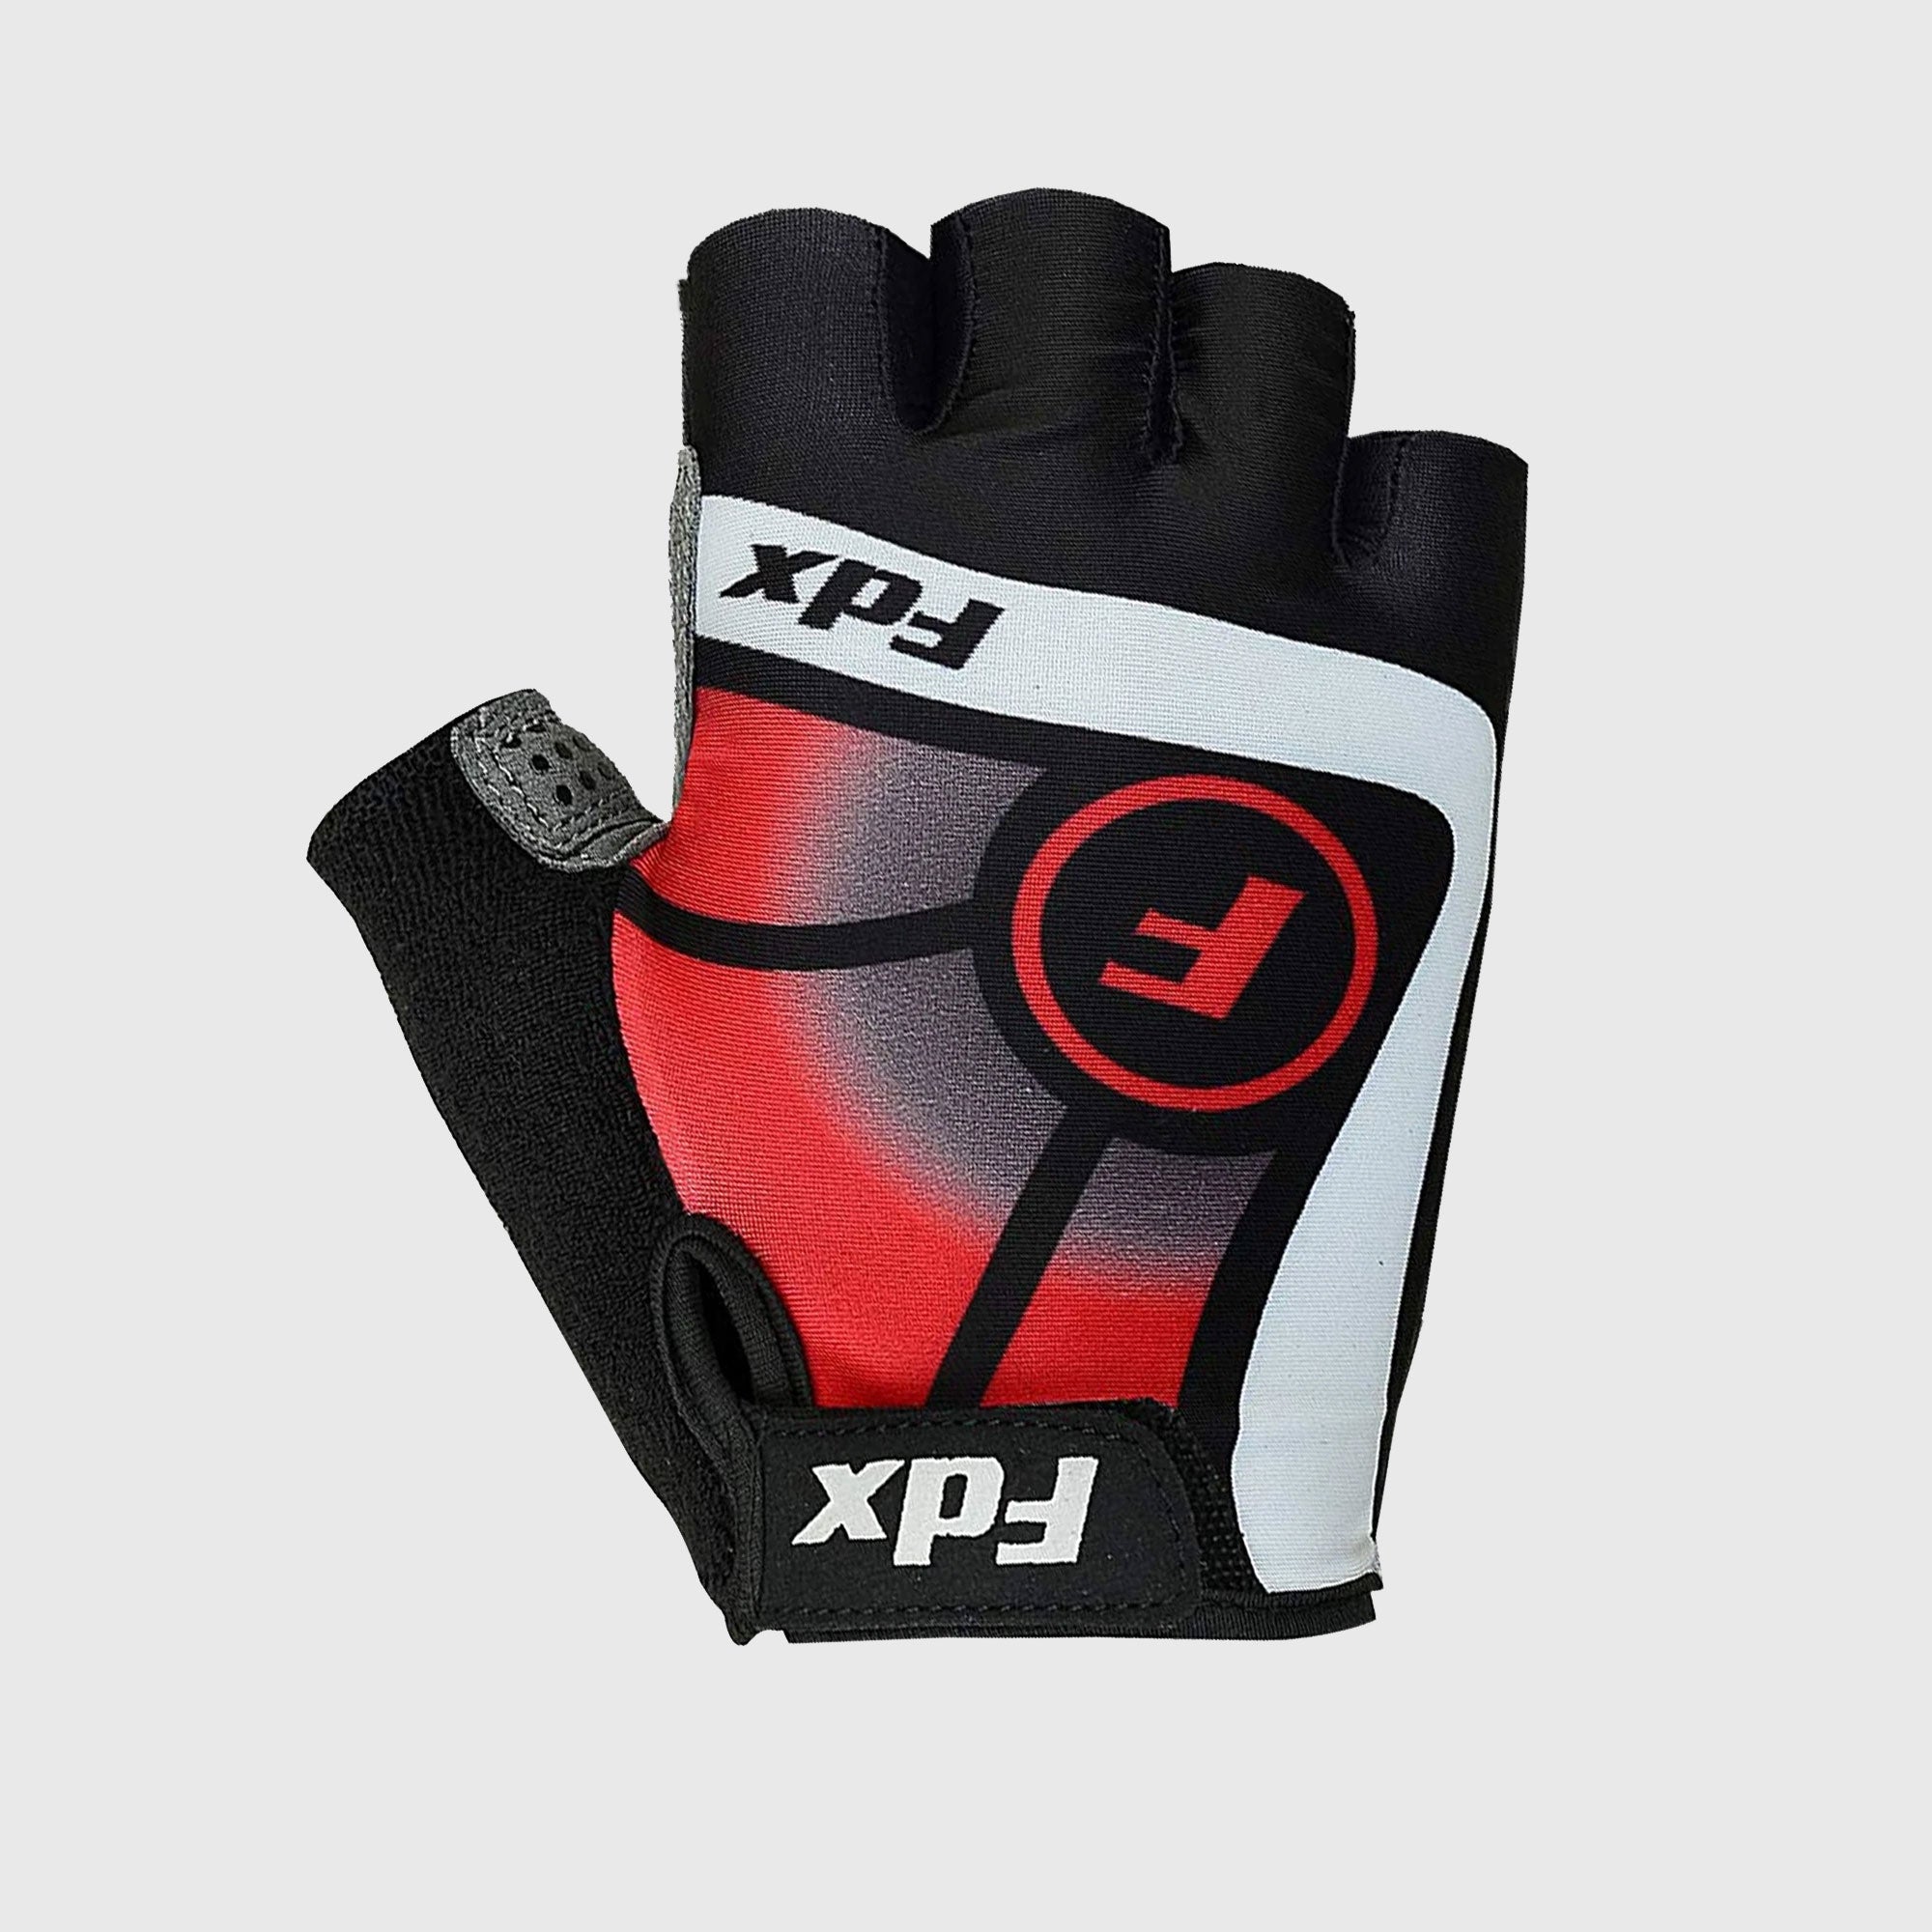 Fdx Black & Red Short Finger Cycling Gloves for Summer MTB Road Bike fingerless, anti slip & Breathable - Signature